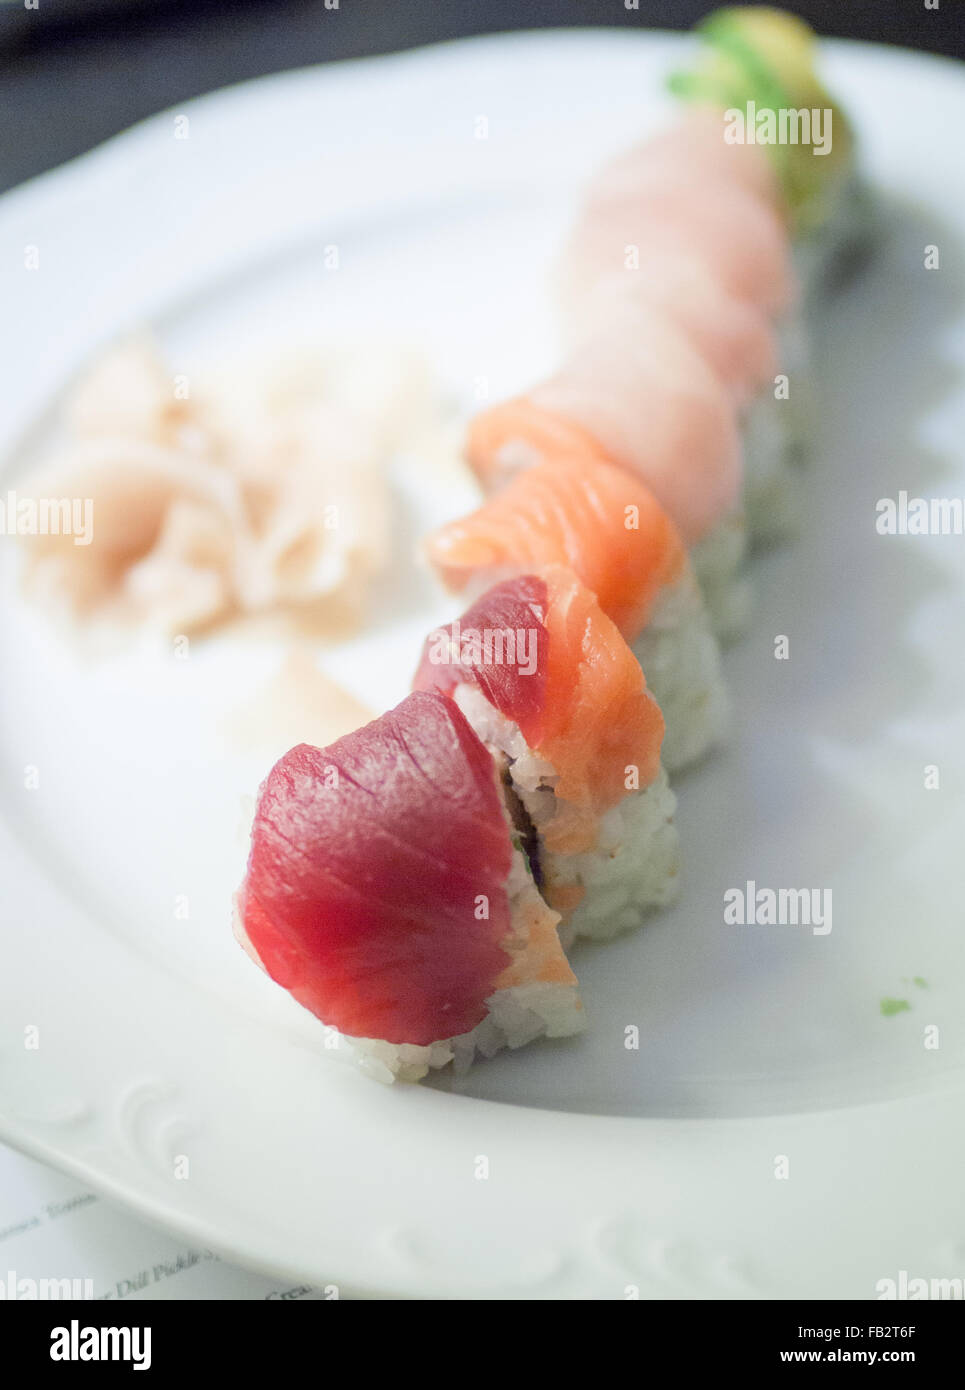 Un portrait photo de rainbow roll sushi et gingembre mariné. Banque D'Images